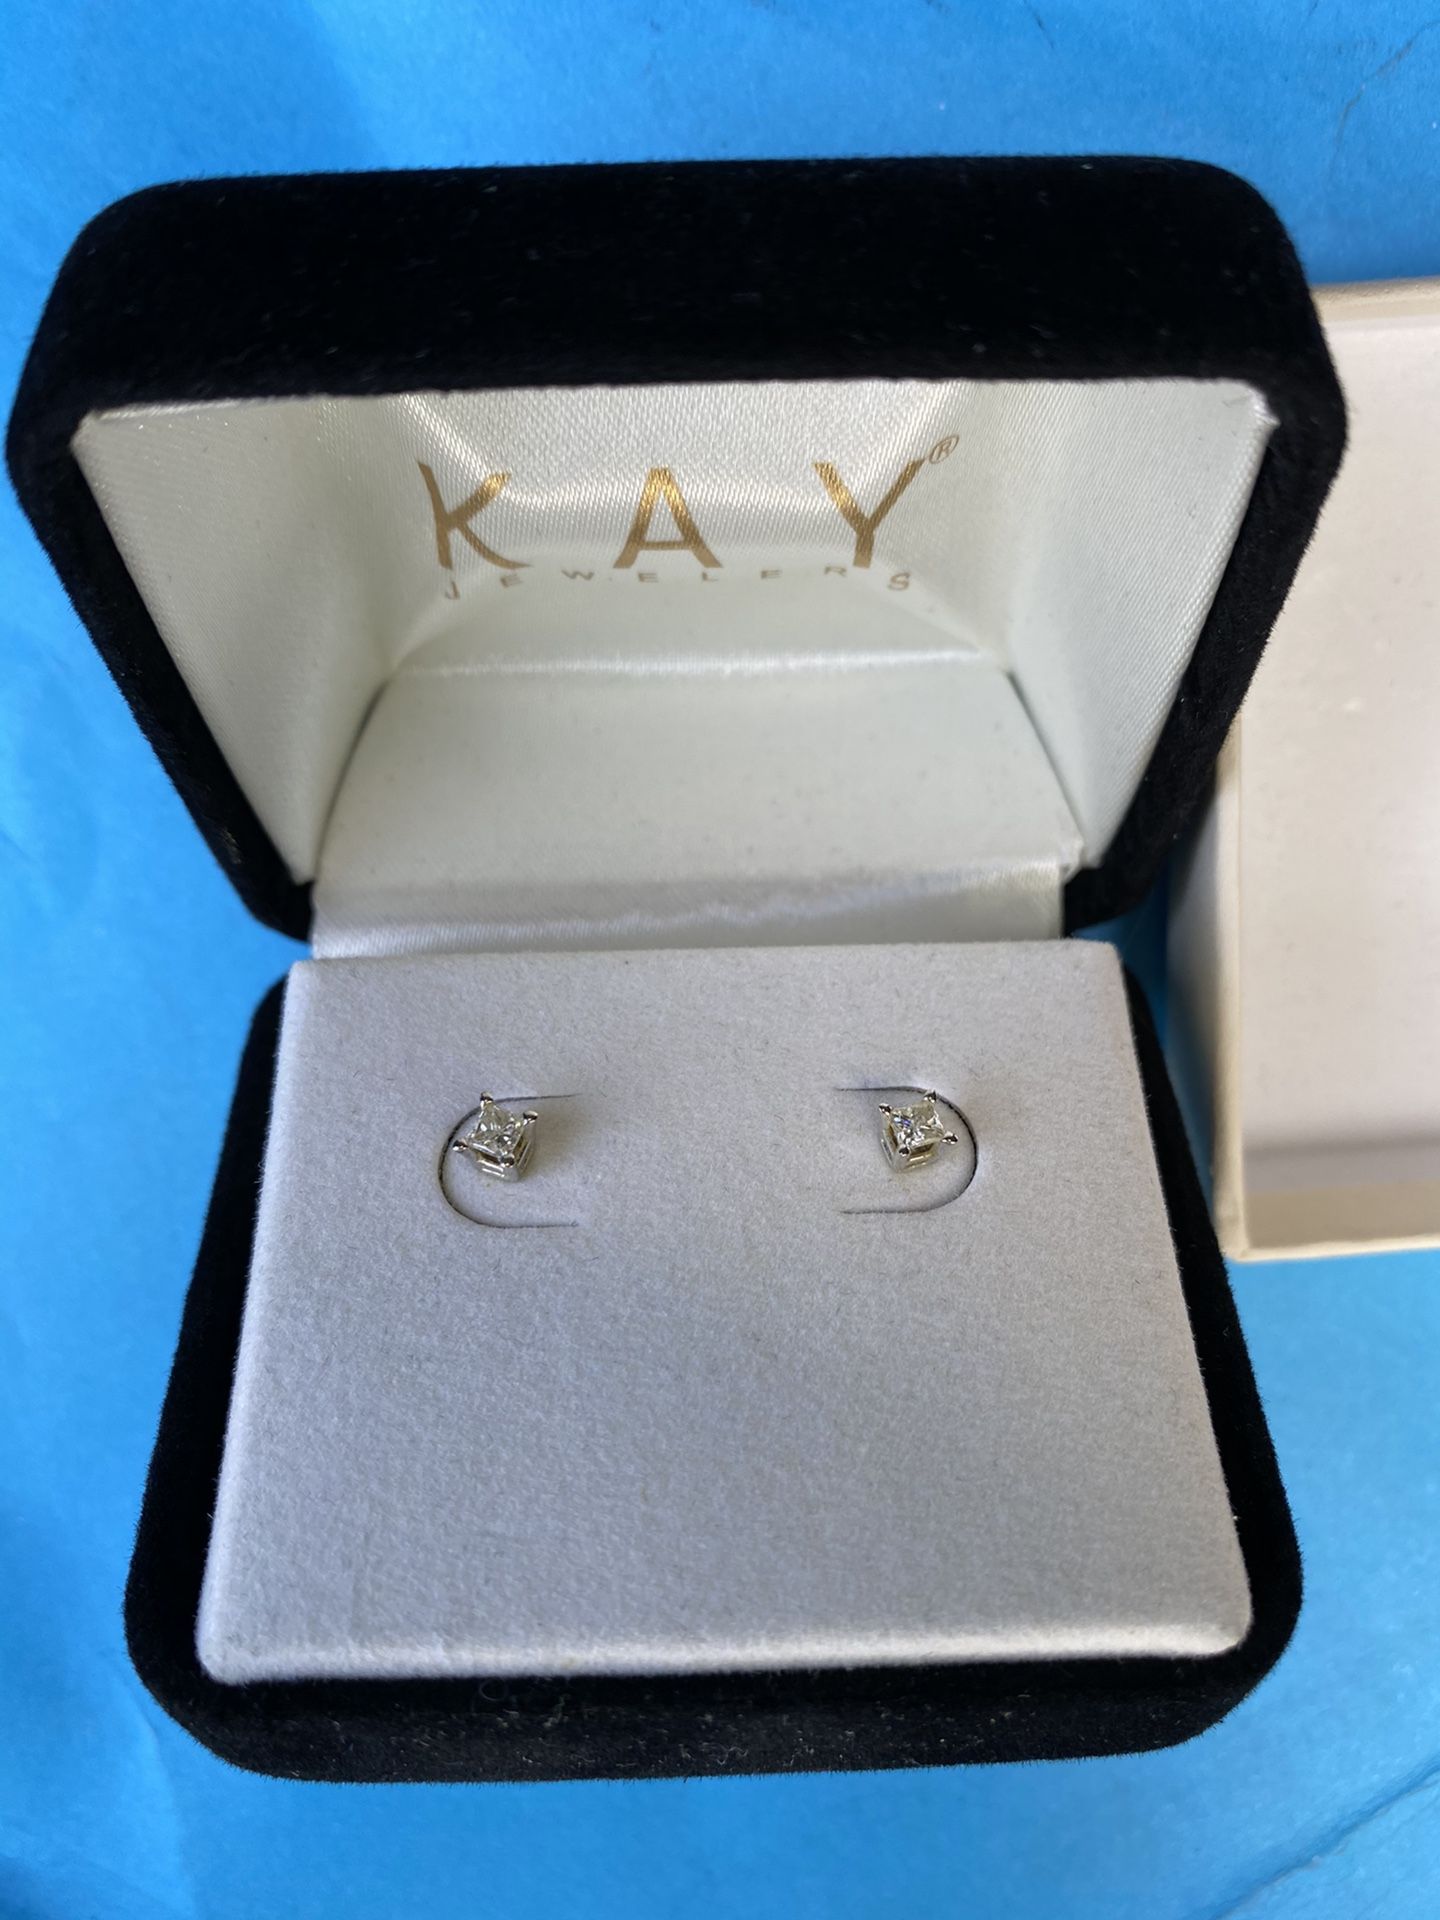 Diamond earrings from Kay jewelry